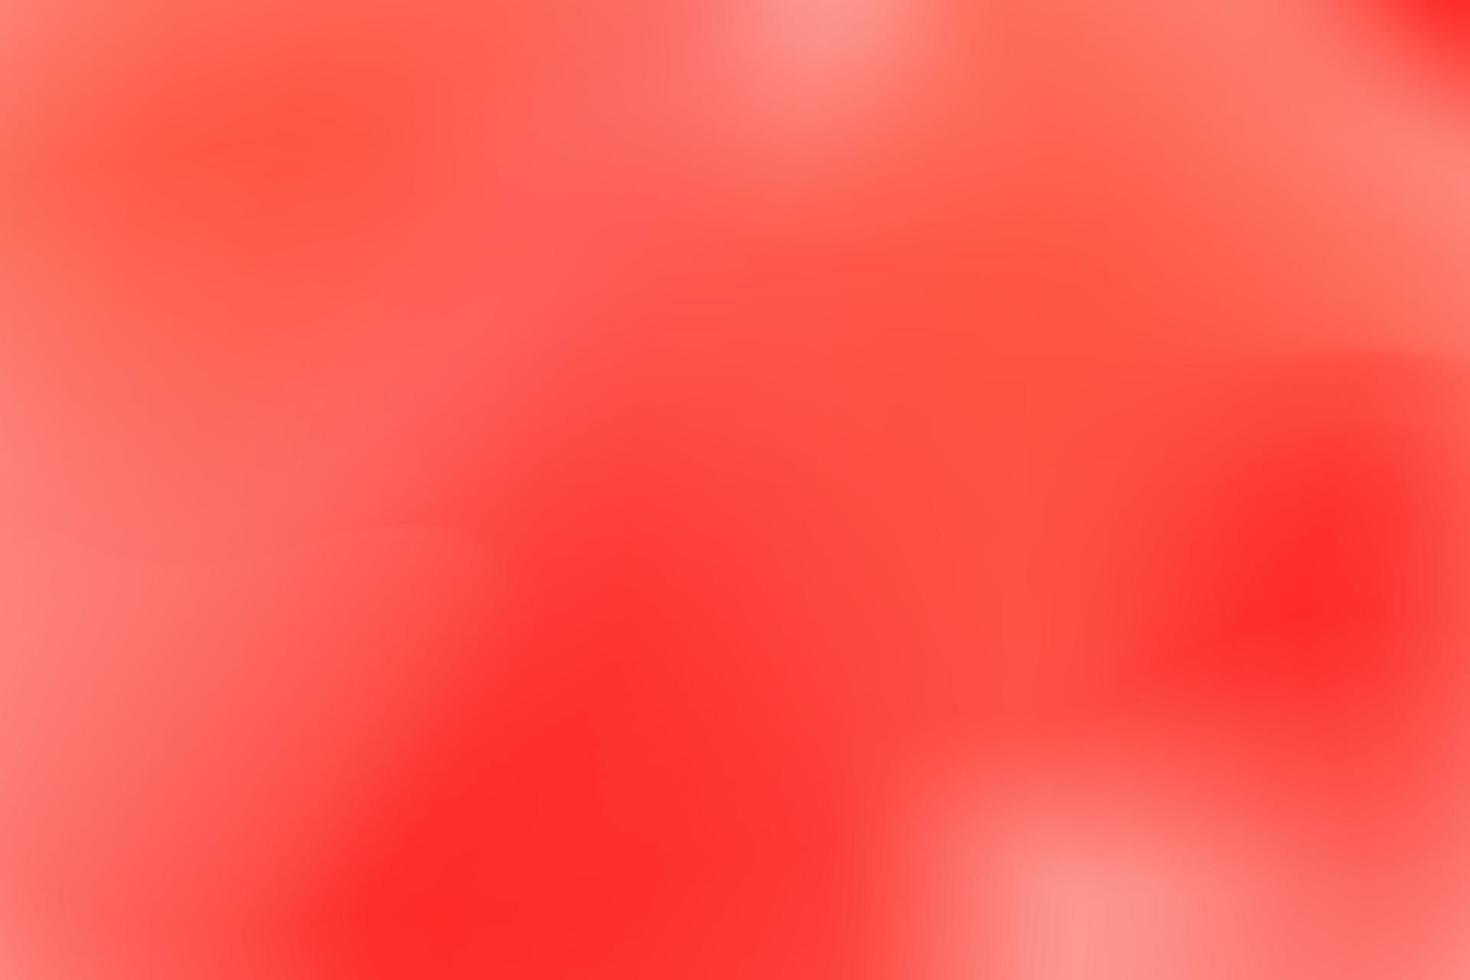 sfondo a gradazione morbida in rosso e bianco, sfondo vettoriale, rosso tenue, gradazione morbida. vettore